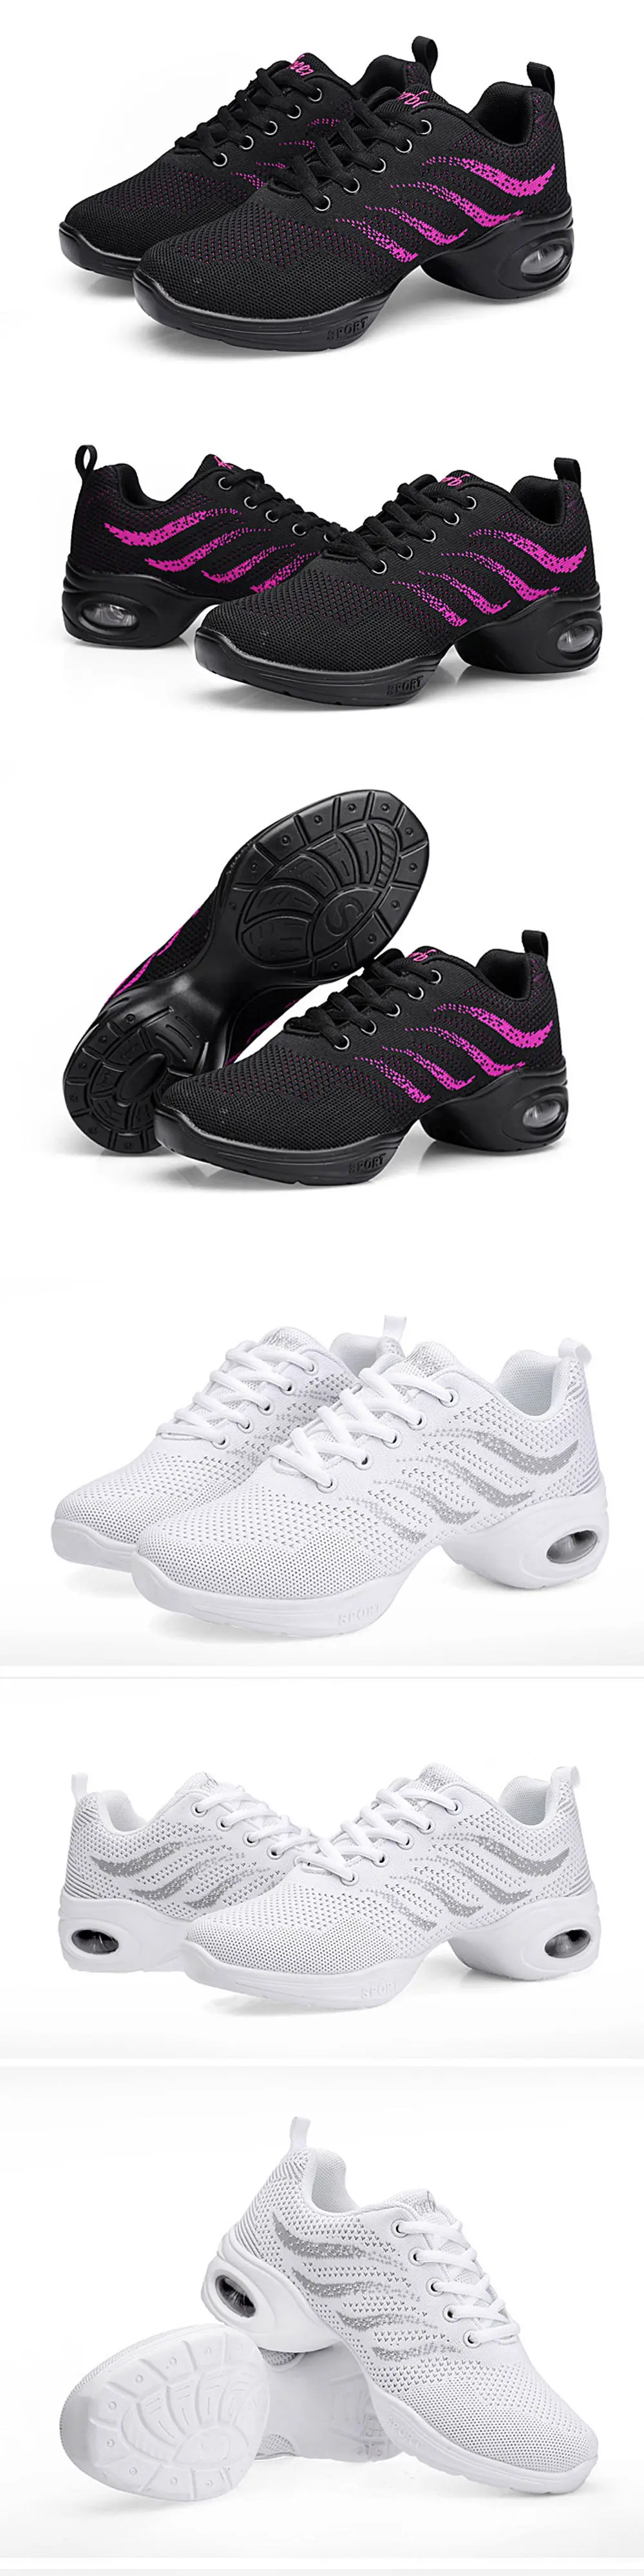 Дышащие сетчатые женские Танцевальные Кроссовки с мягкой подошвой; женская спортивная обувь для современных джазовых танцев; женская танцевальная обувь; обувь для фитнеса